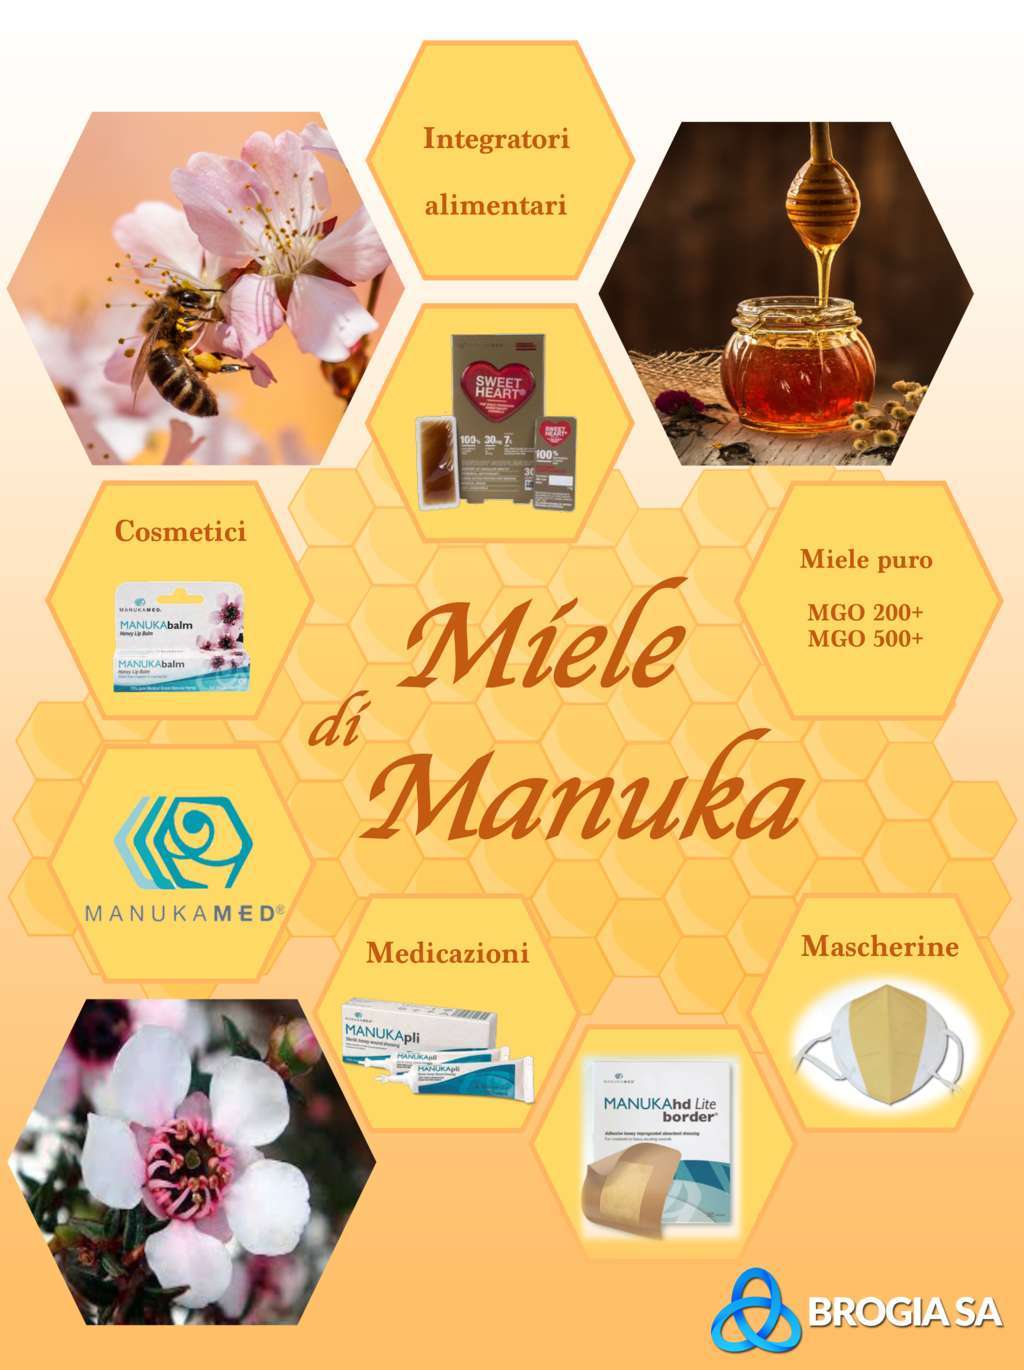 Manukamed: Prodotti a base di miele di Manuka